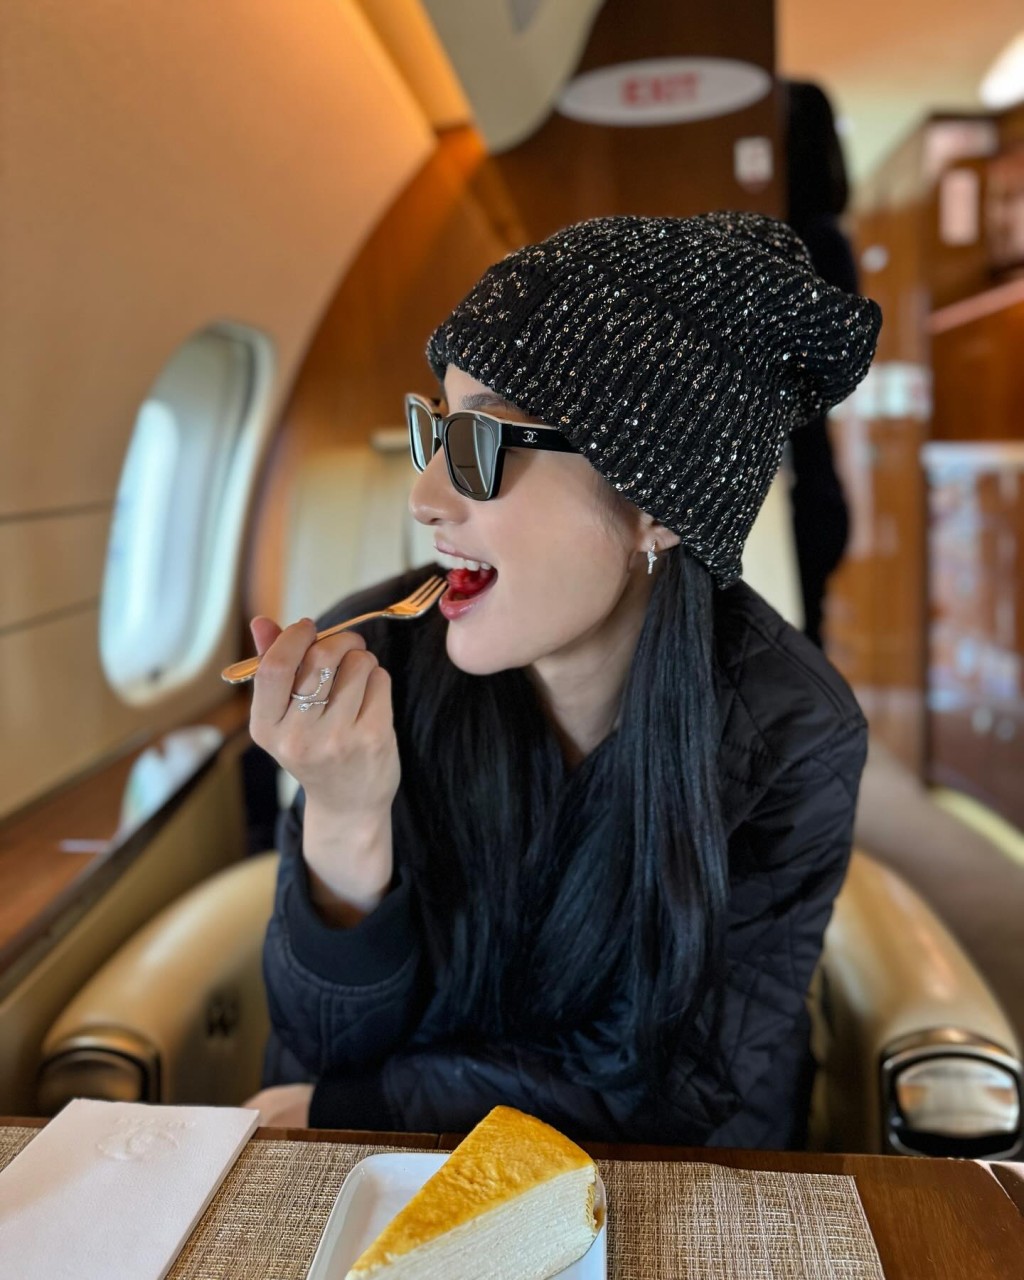 林夏薇在机前及机舱内疯狂打卡，认真富贵，令不少网民都大叹羡慕。